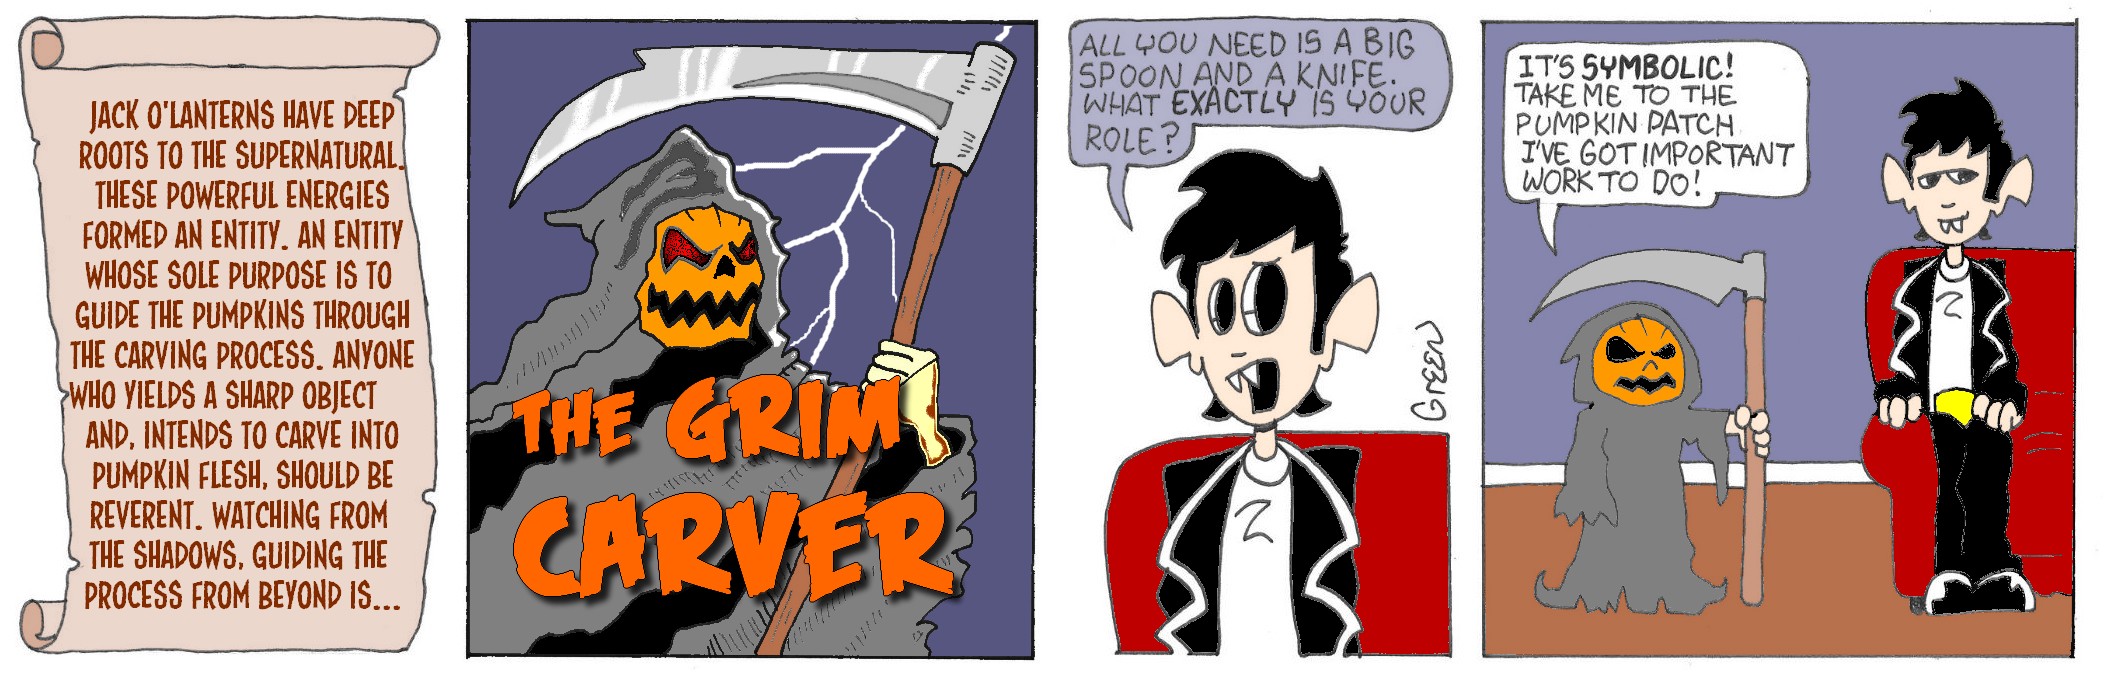 The Grim Carver